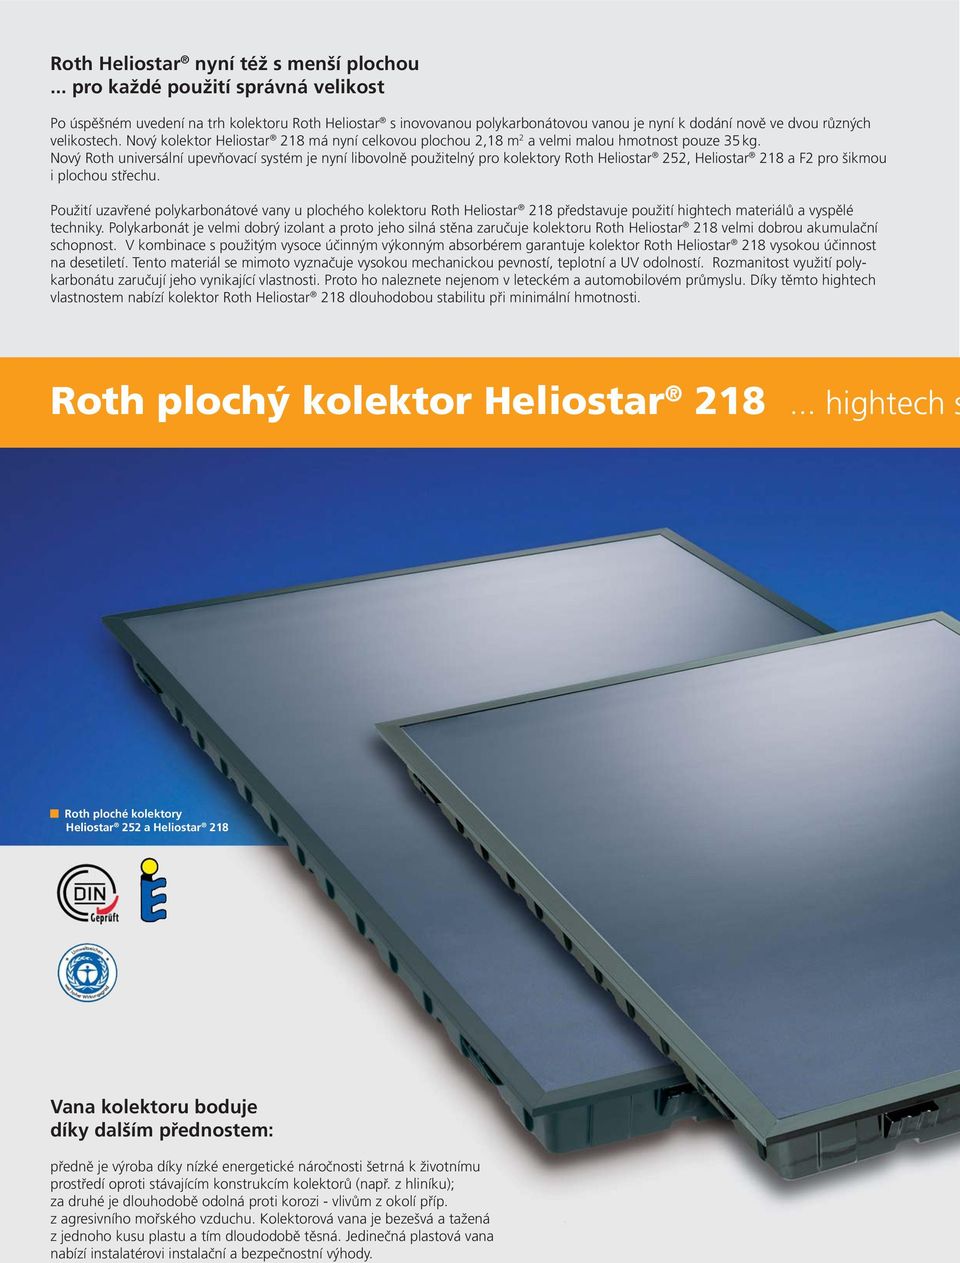 Nový kolektor Heliostar 218 má nyní celkovou plochou 2,18 m 2 a velmi malou hmotnost pouze 35 kg.